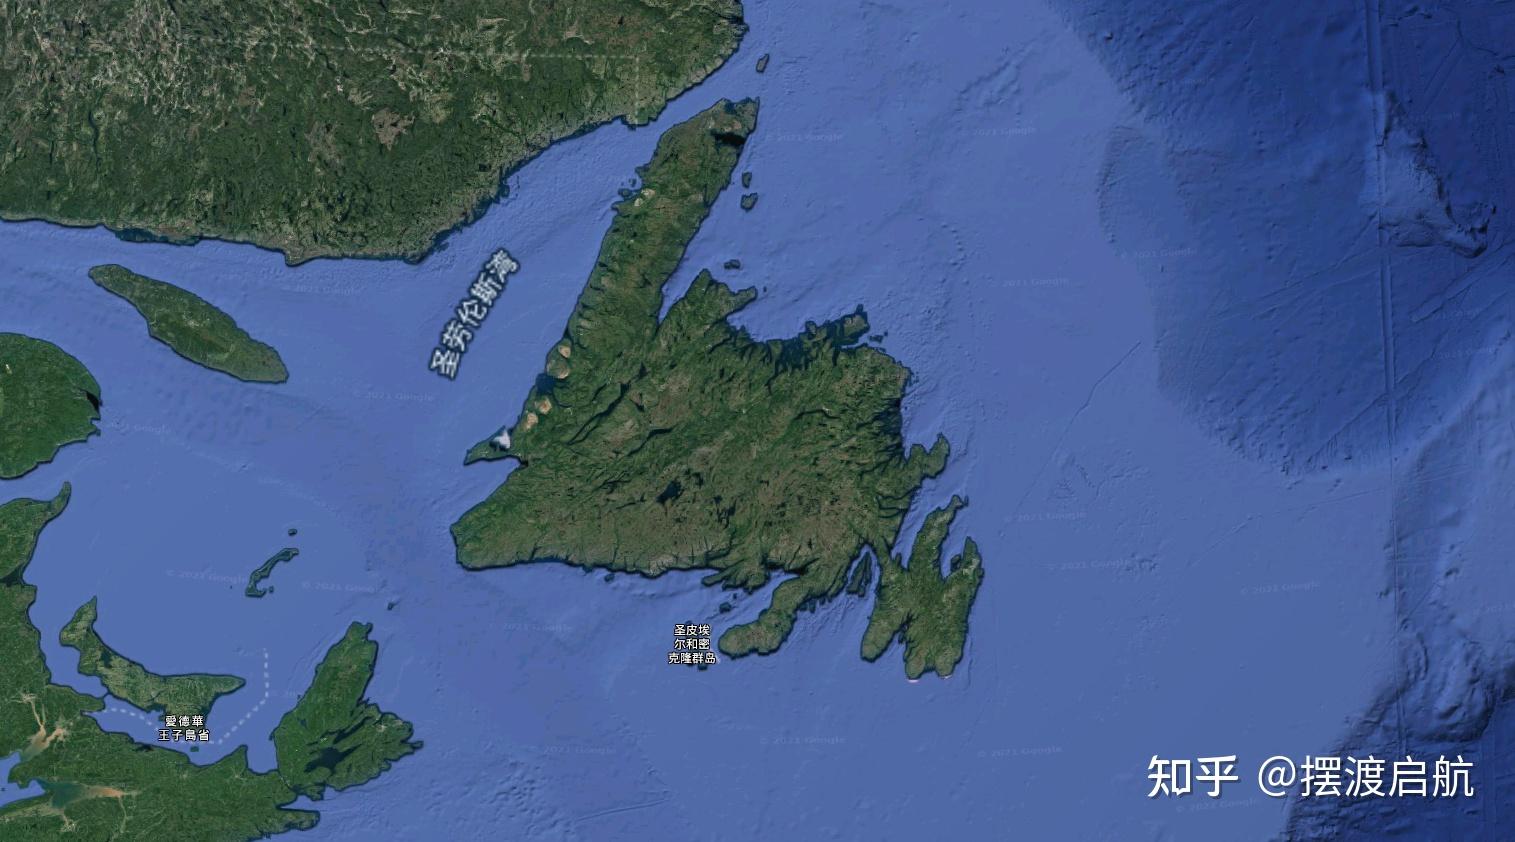 海峡群岛泽西岛图像 库存照片. 图片 包括有 泽西, 堡垒, 多云, 海岛, 地平线, 海岸, 小船, 小岛 - 188028166